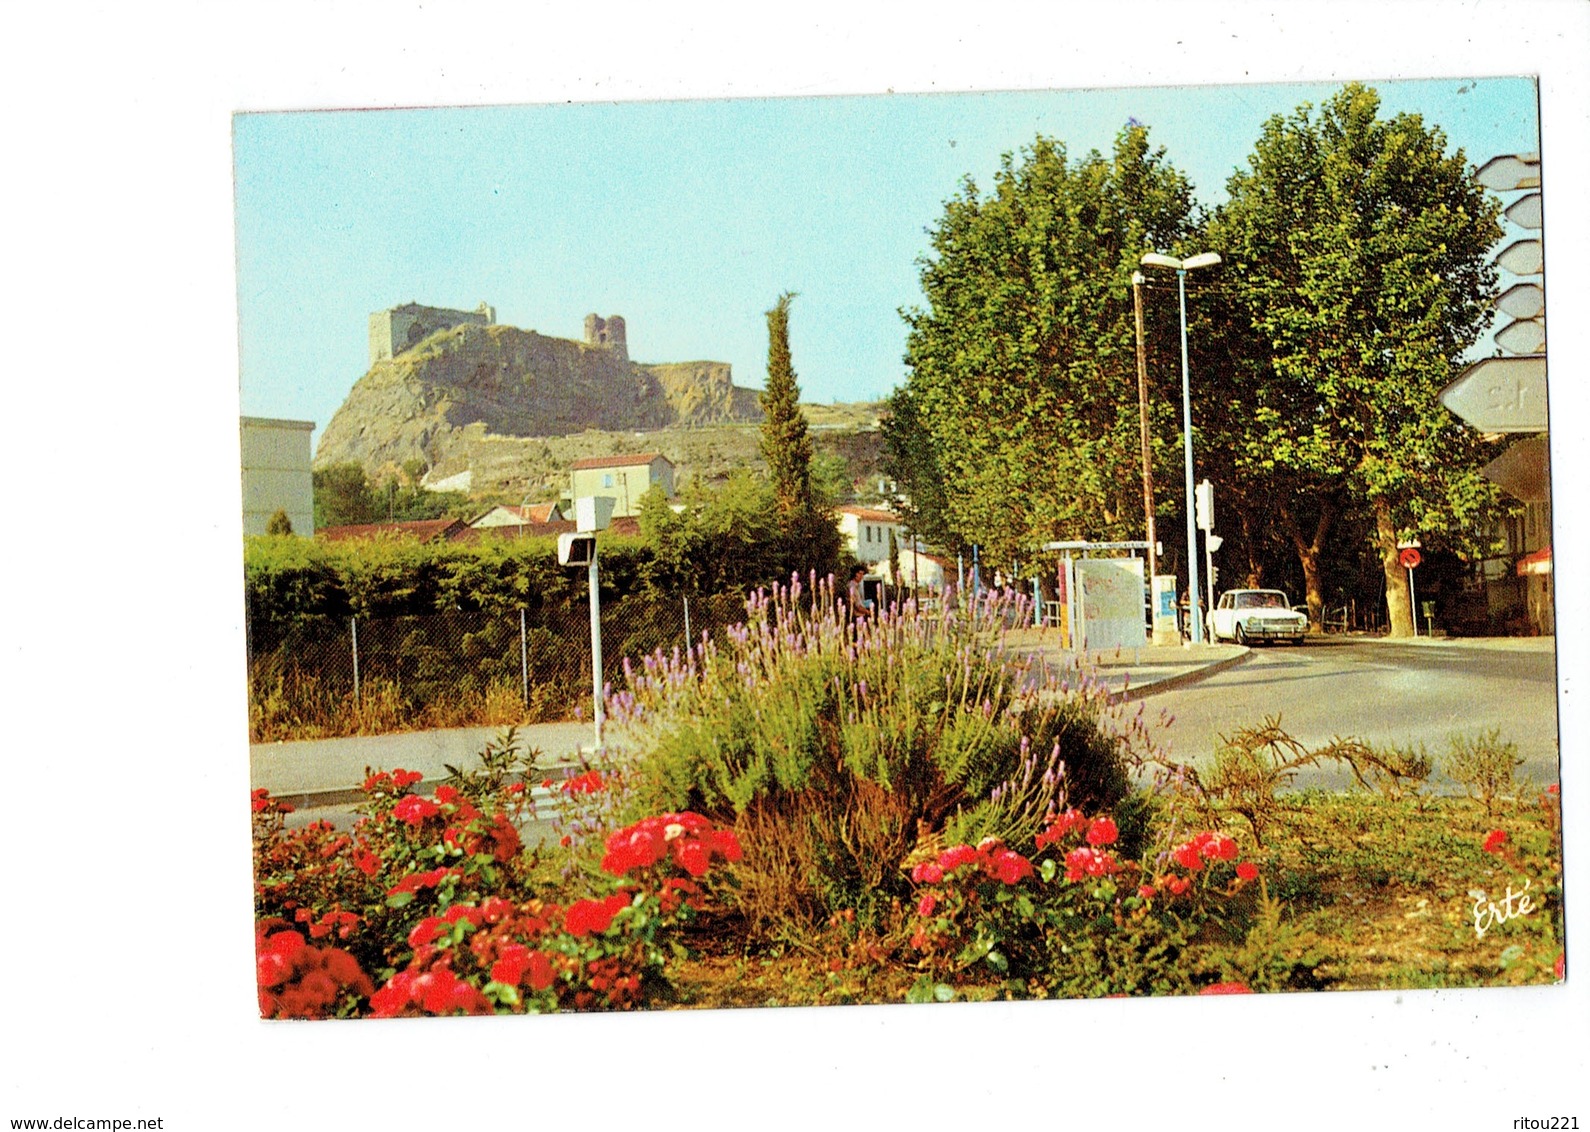 Cpm - 83 -  La Garde - Le Rocher - Entrée Nord De La Ville - Voiture Simca 1301 - 1979 - Fotofset 1402 - Fleur Lavande - La Garde